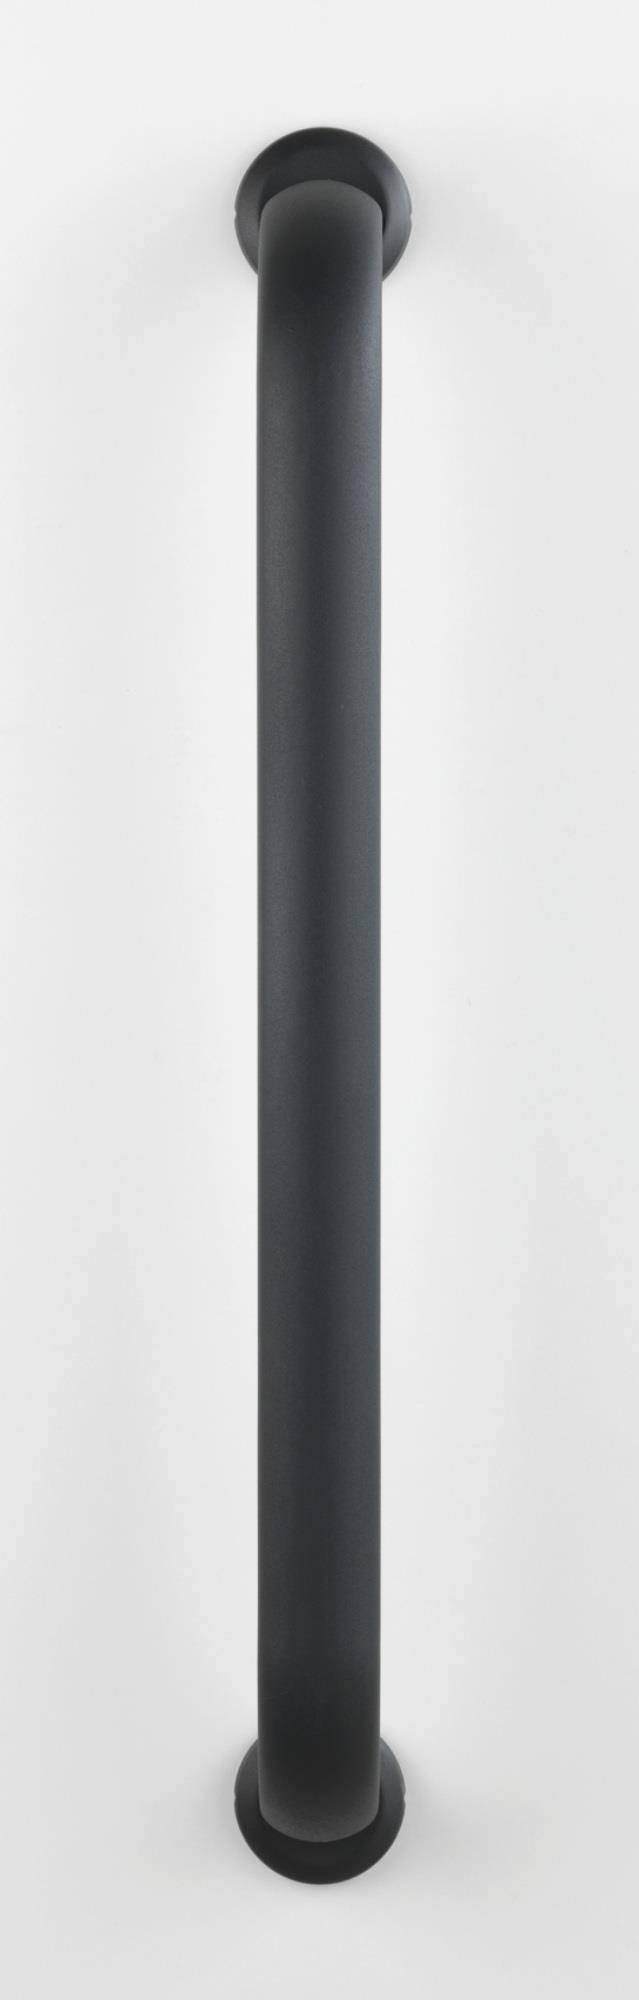 Uchwyt łazienkowy SECURA, 67 cm, kolor antracytowy, WENKO